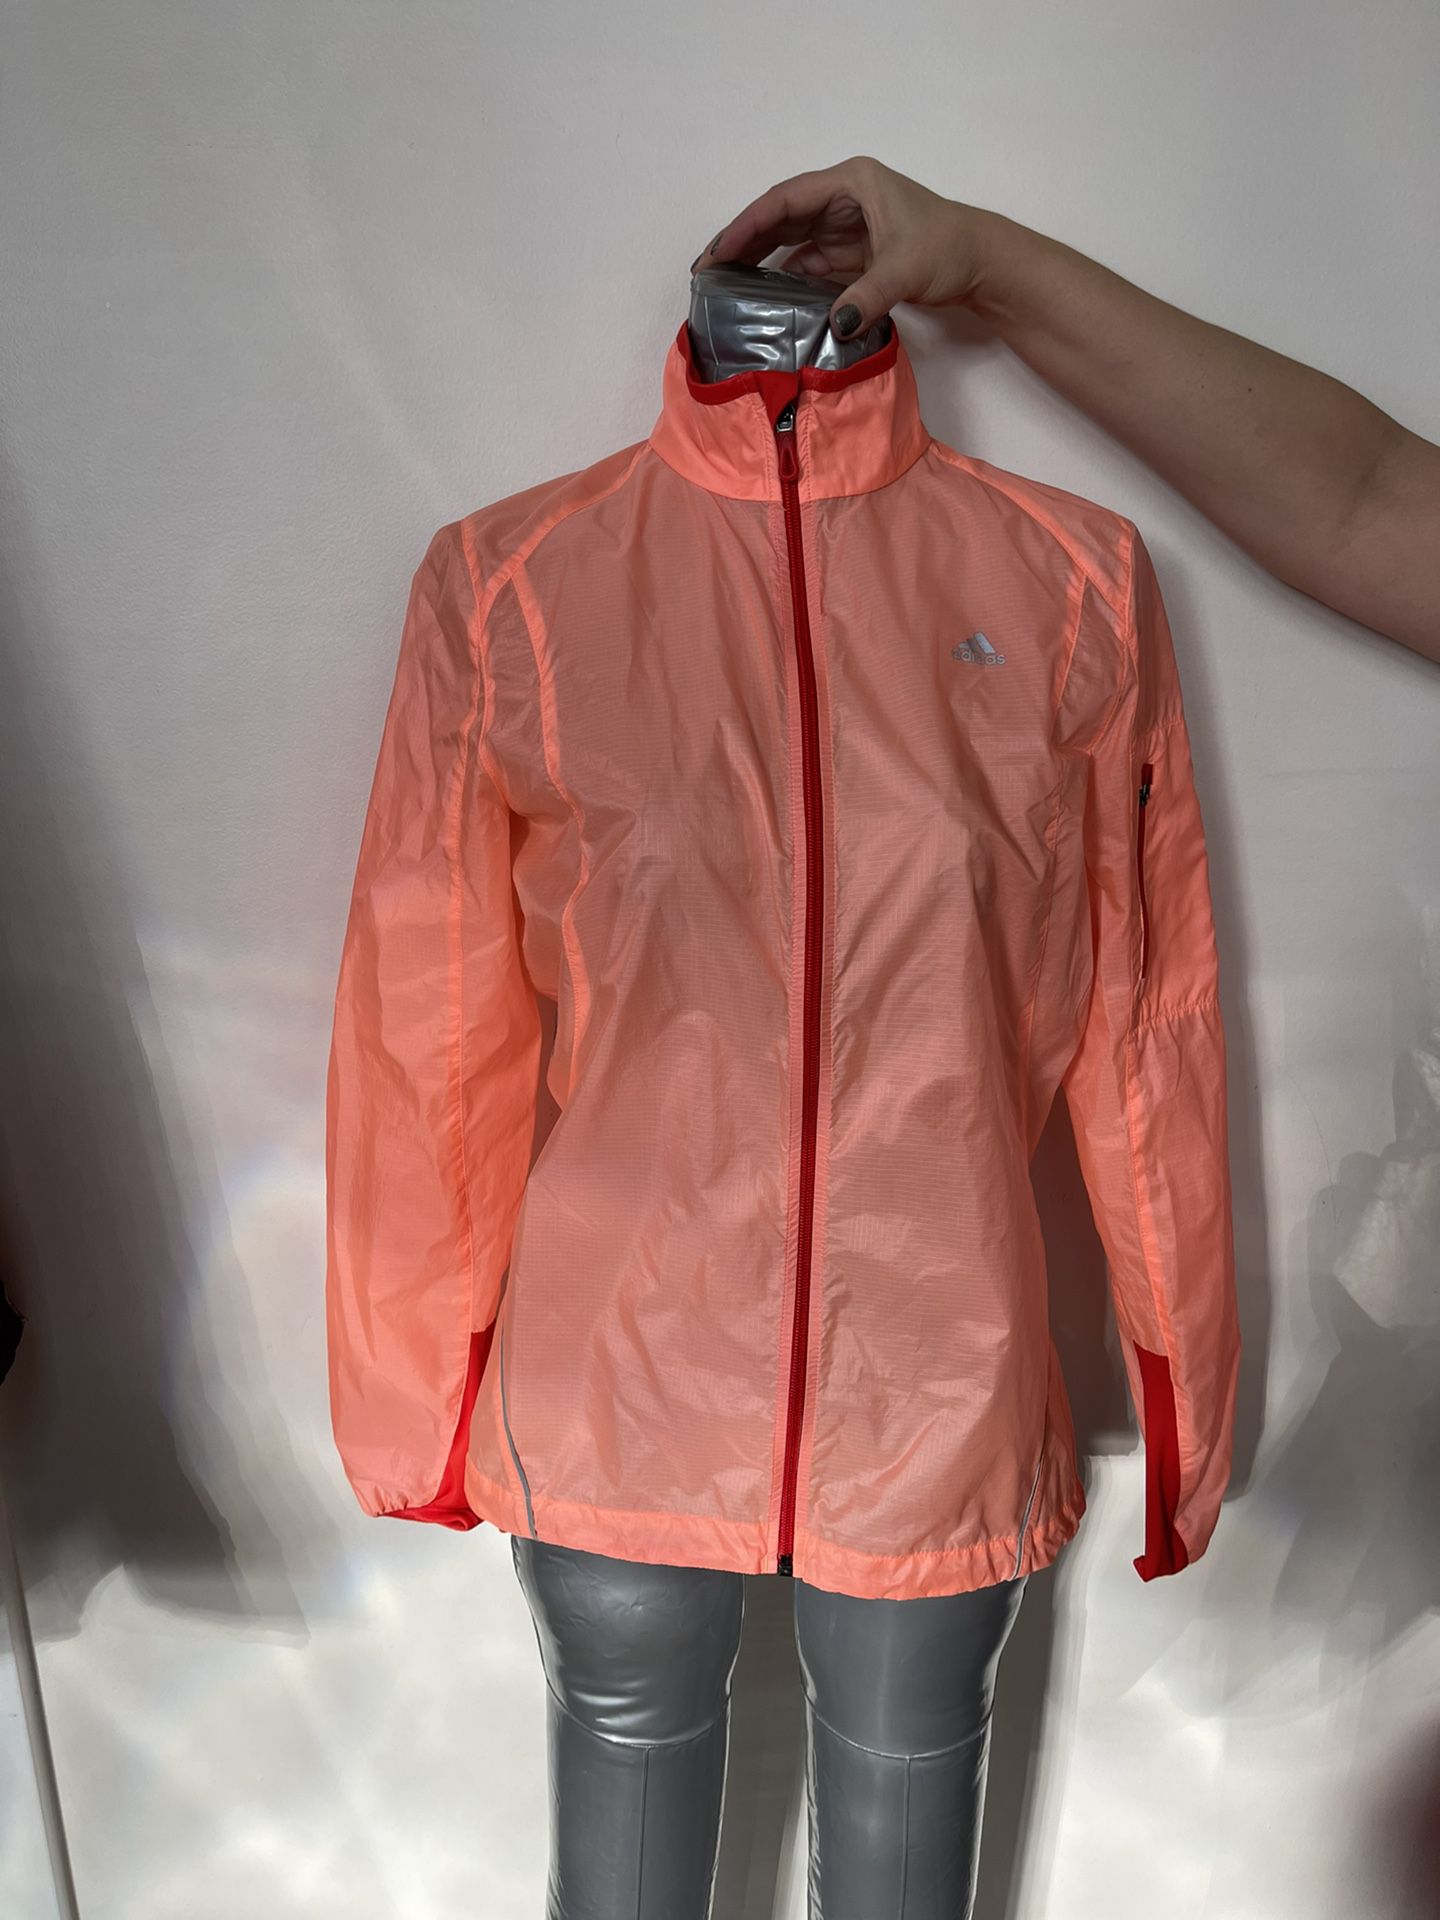 Women’s Adidas Full Zipped Jacket Wind Breaker Waterproof Size S